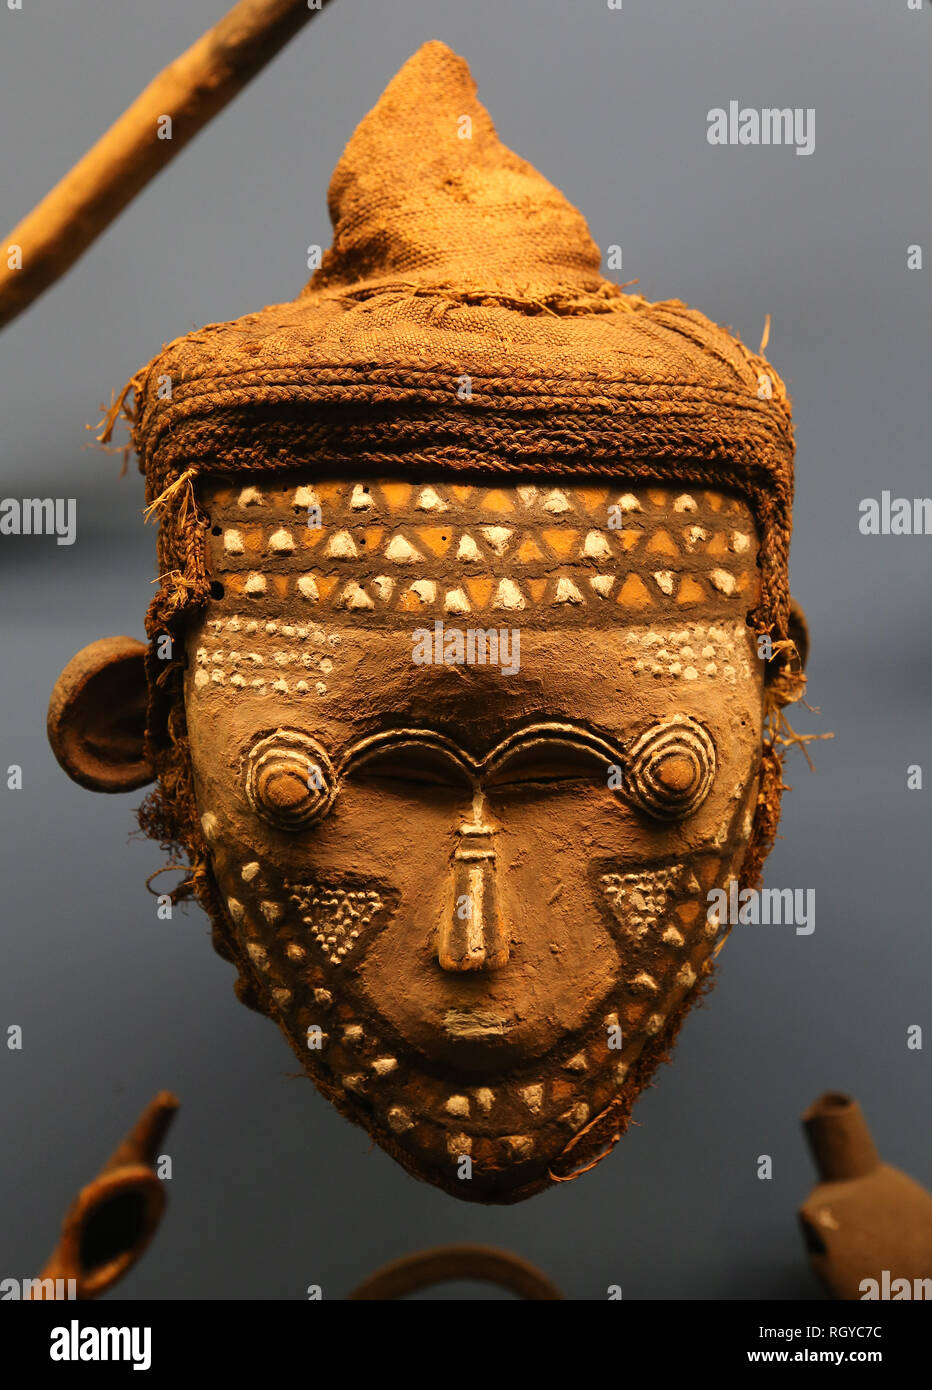 Masck, Lele. Afrikanische Objekt. Kongo. American Museum of Natural History. New York in den Vereinigten Staaten. Stockfoto